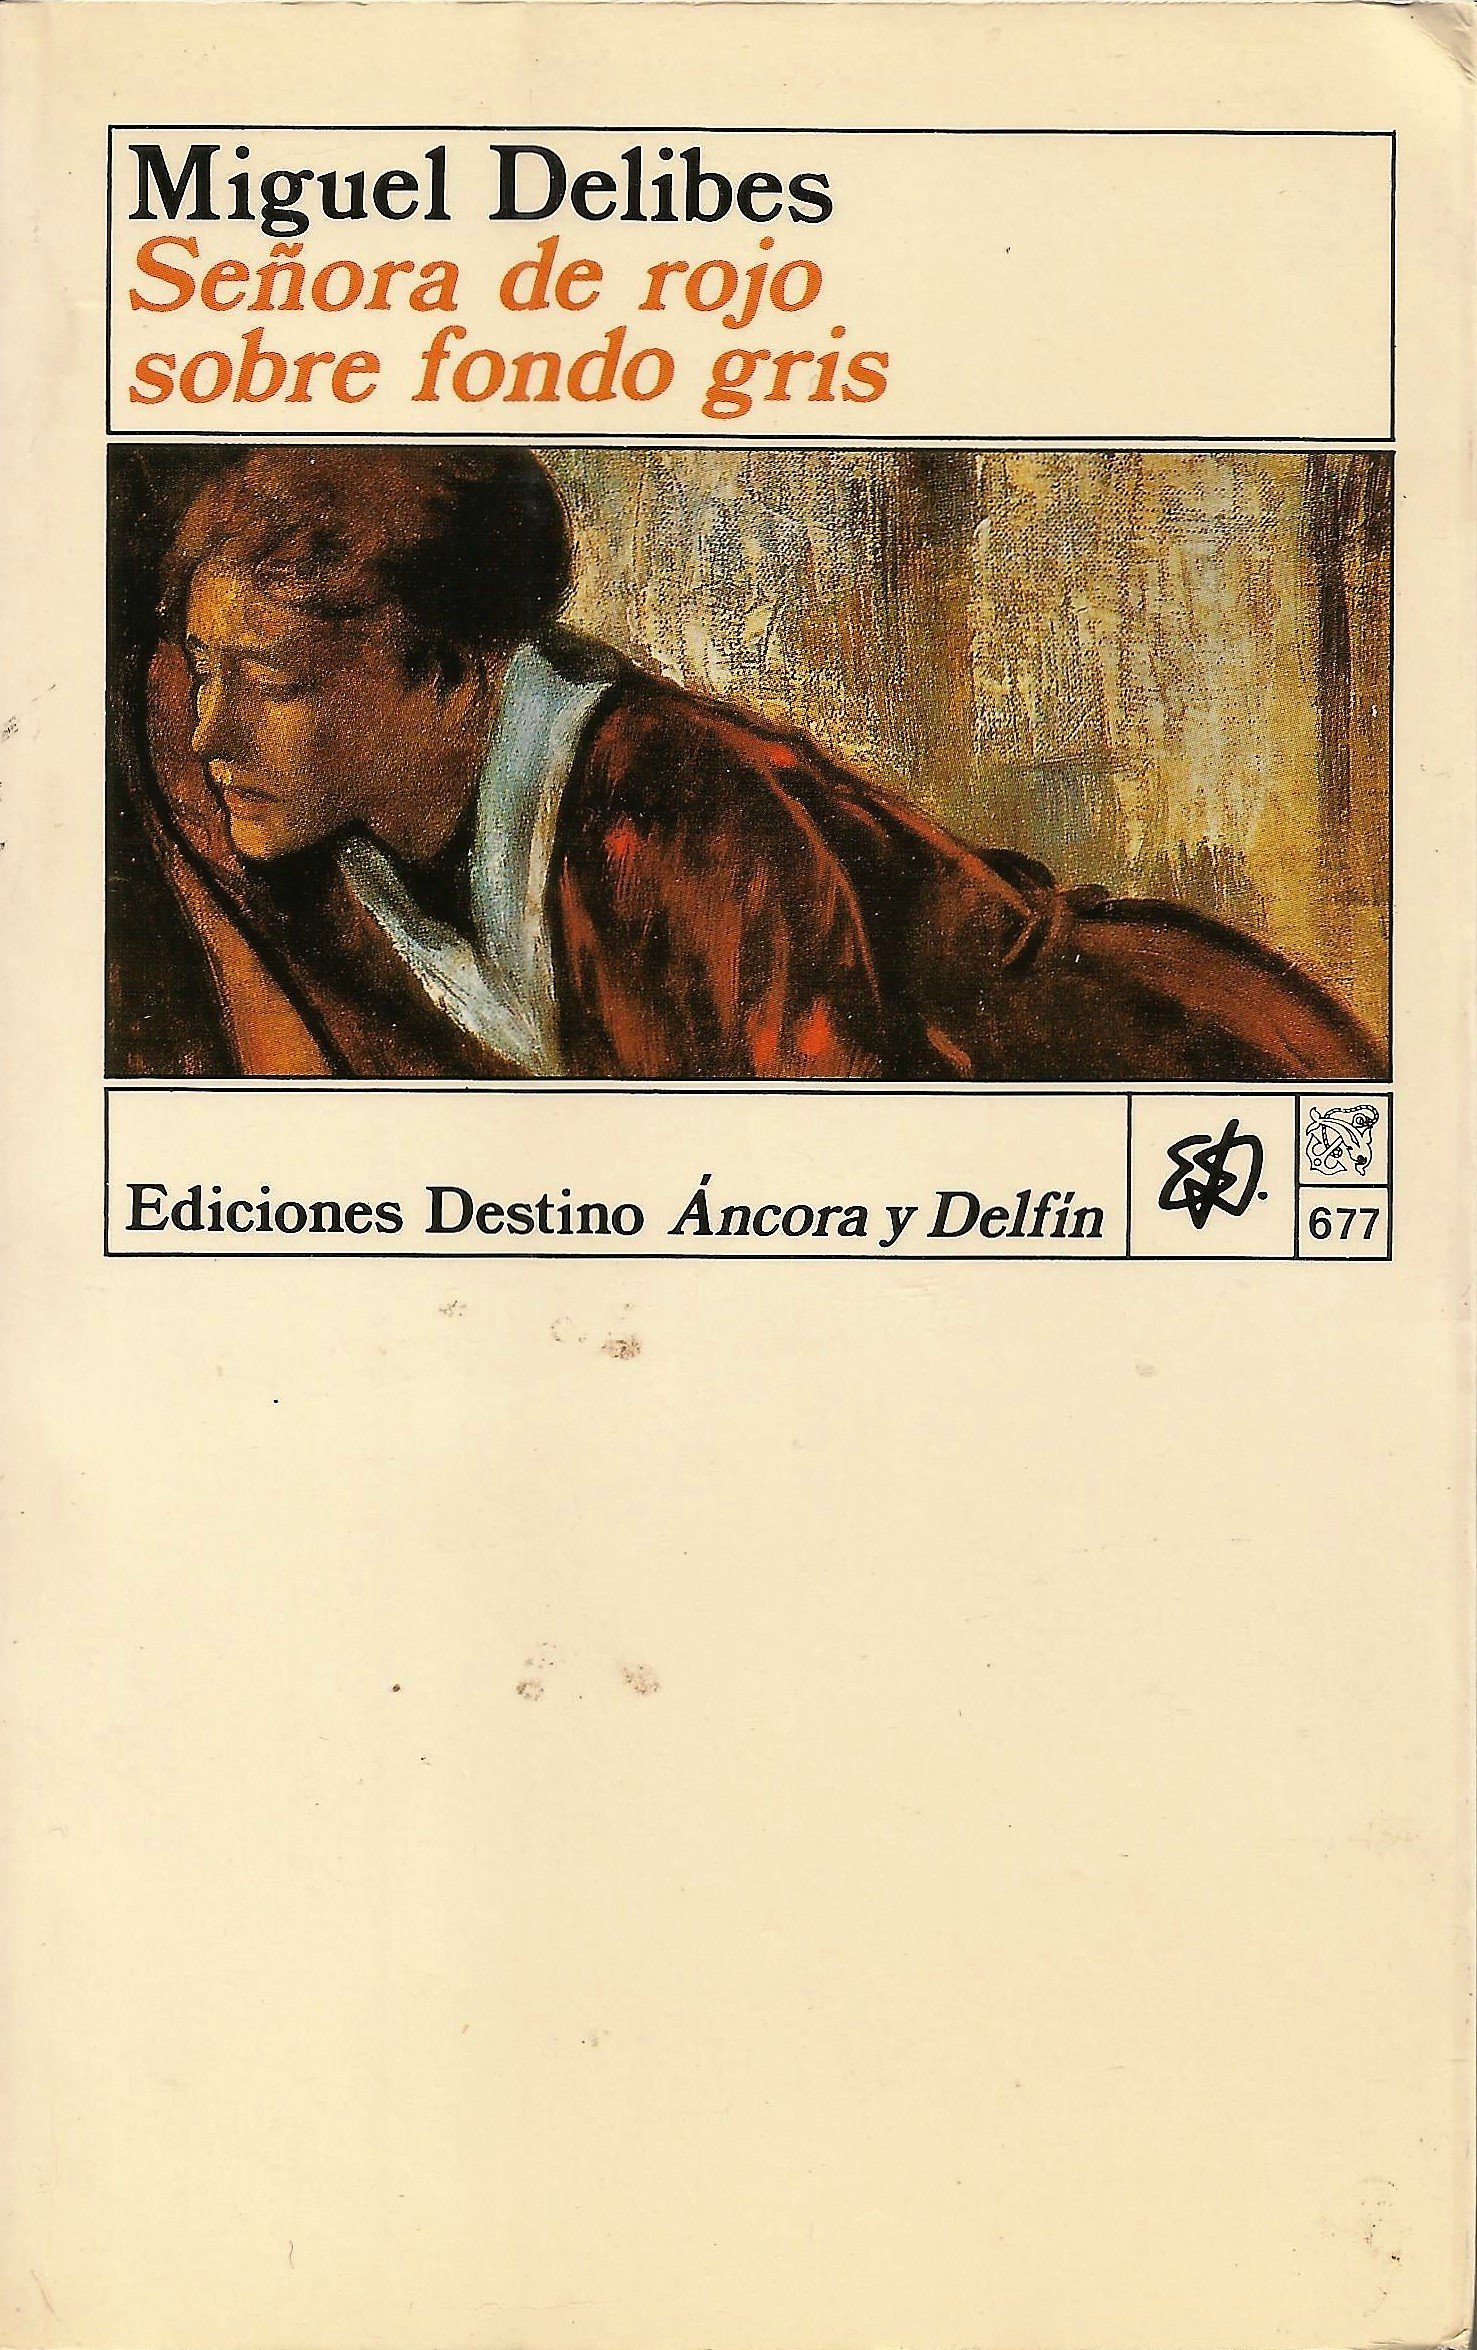 Miguel Delibes: Señora de rojo sobre fondo gris (castellano language, Ediciones Destino)